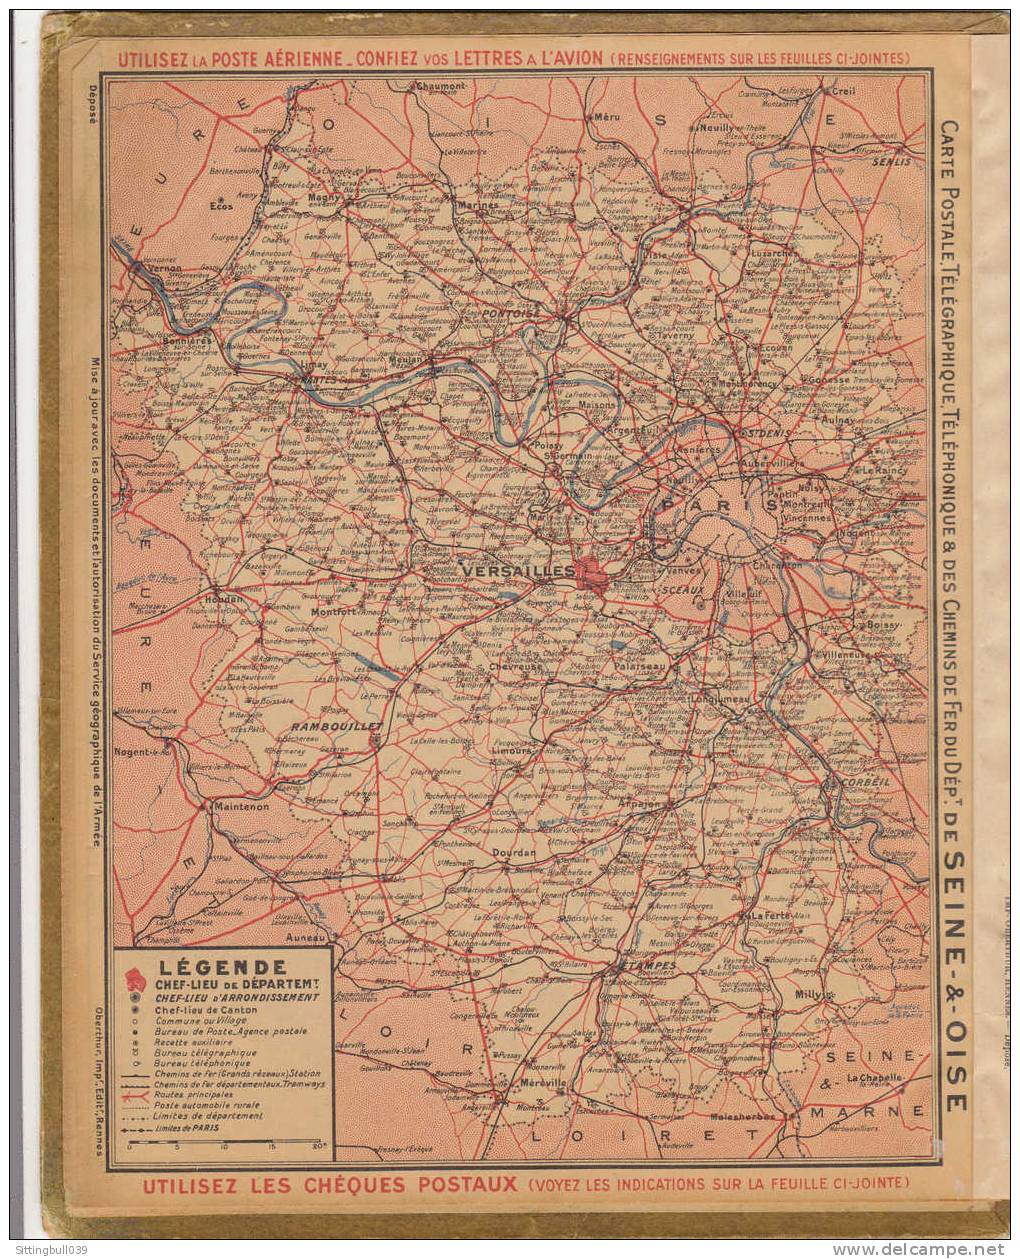 Almanach Des Postes Et Des Télégraphes. Calendrier 1940 (78). En Bretagne, Arracheurs De Pommes De Terre. Oberthur. - Groot Formaat: 1901-20